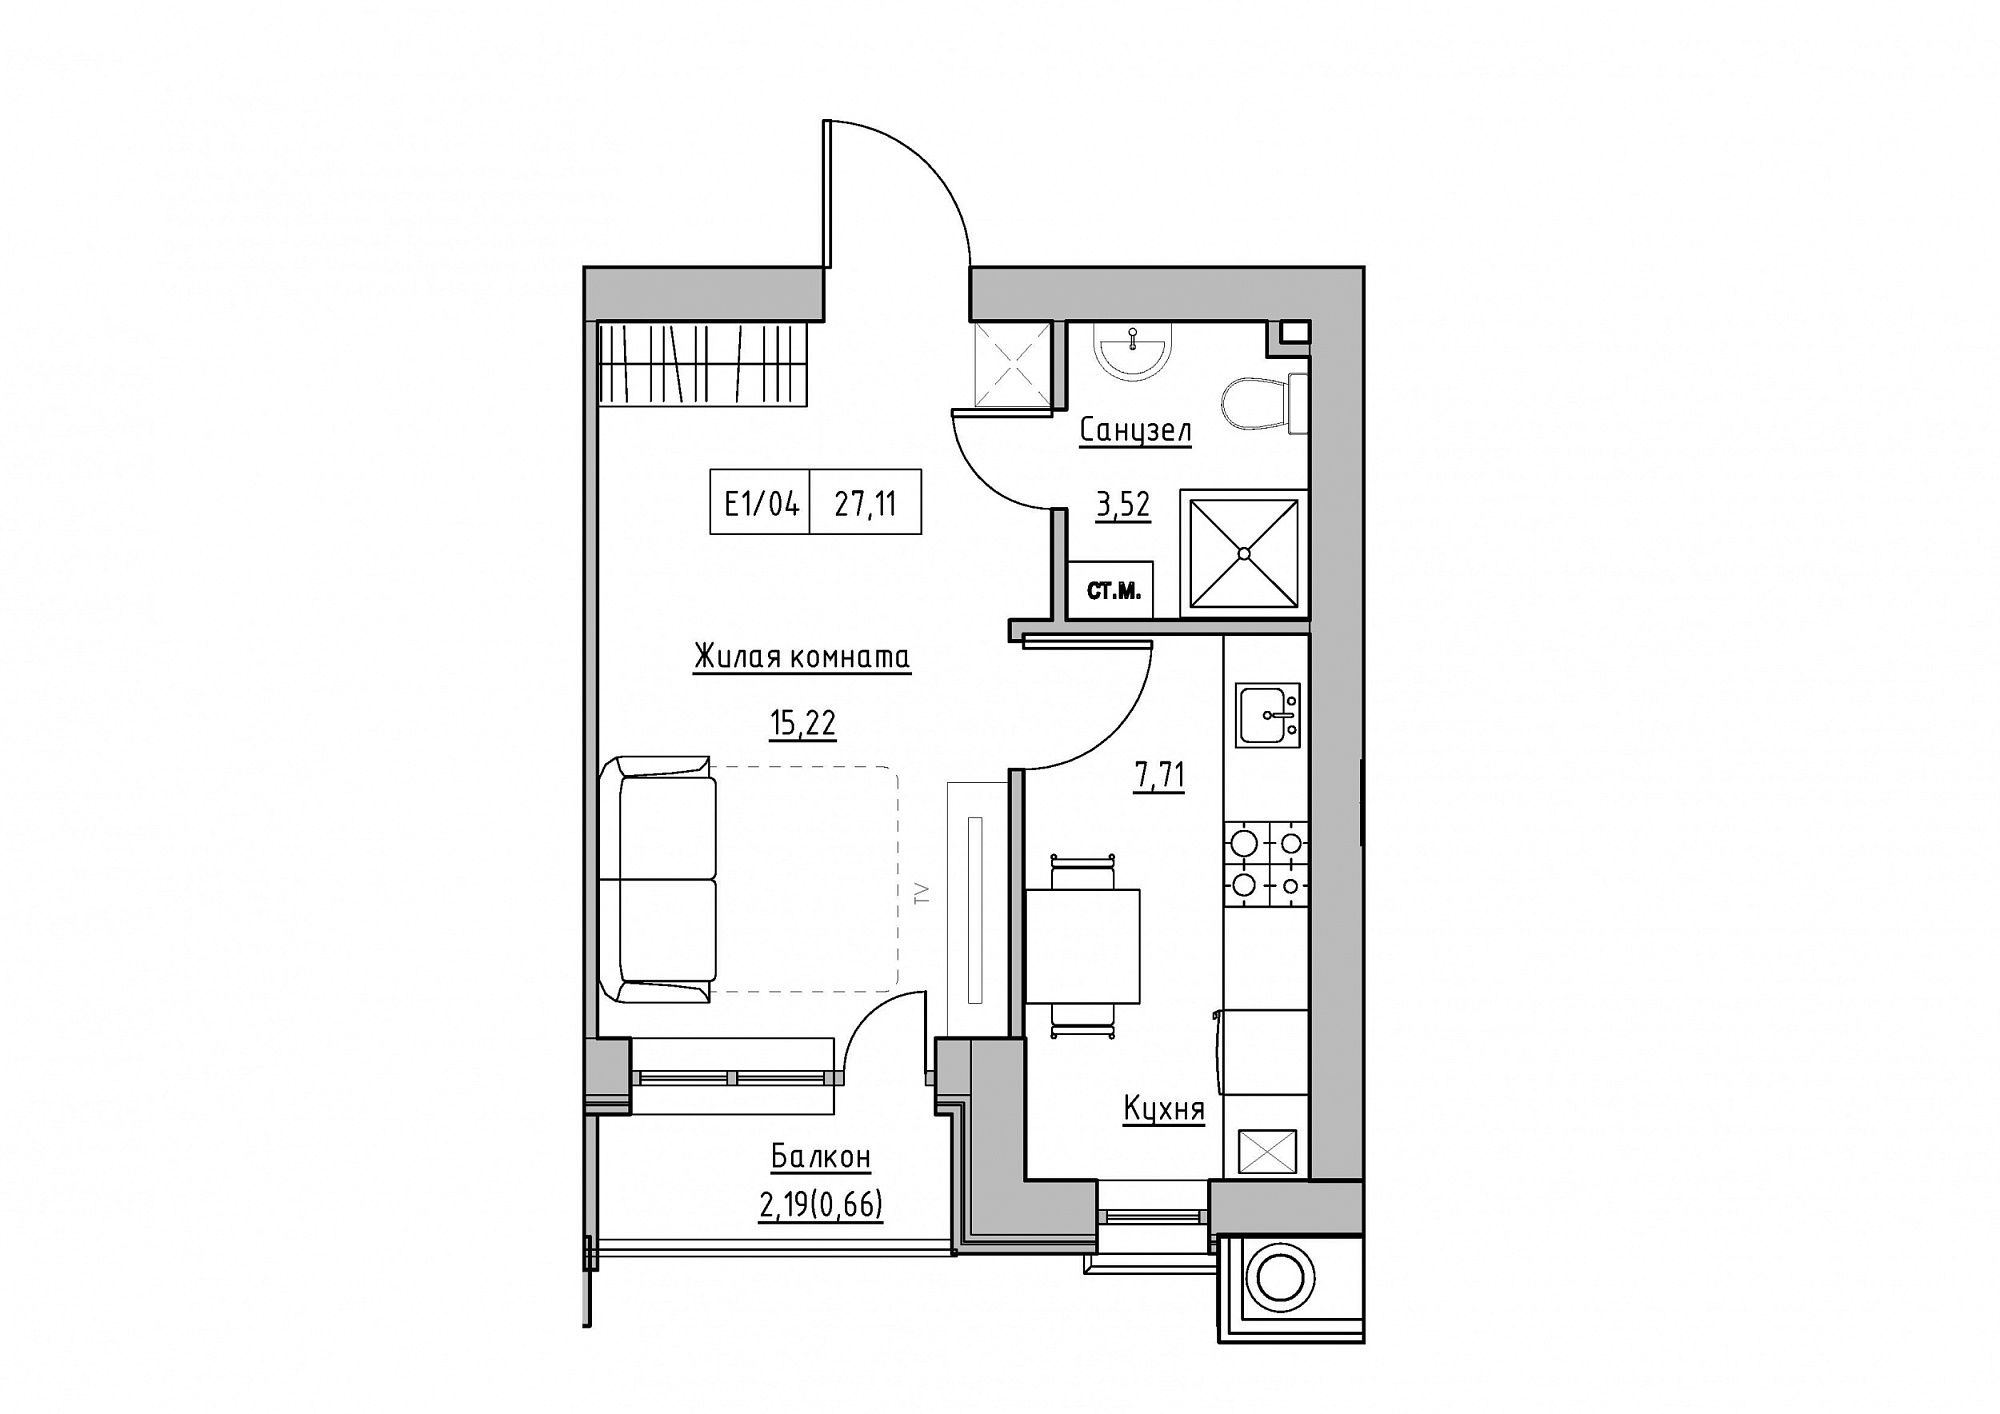 Планировка 1-к квартира площей 27.11м2, KS-011-05/0011.